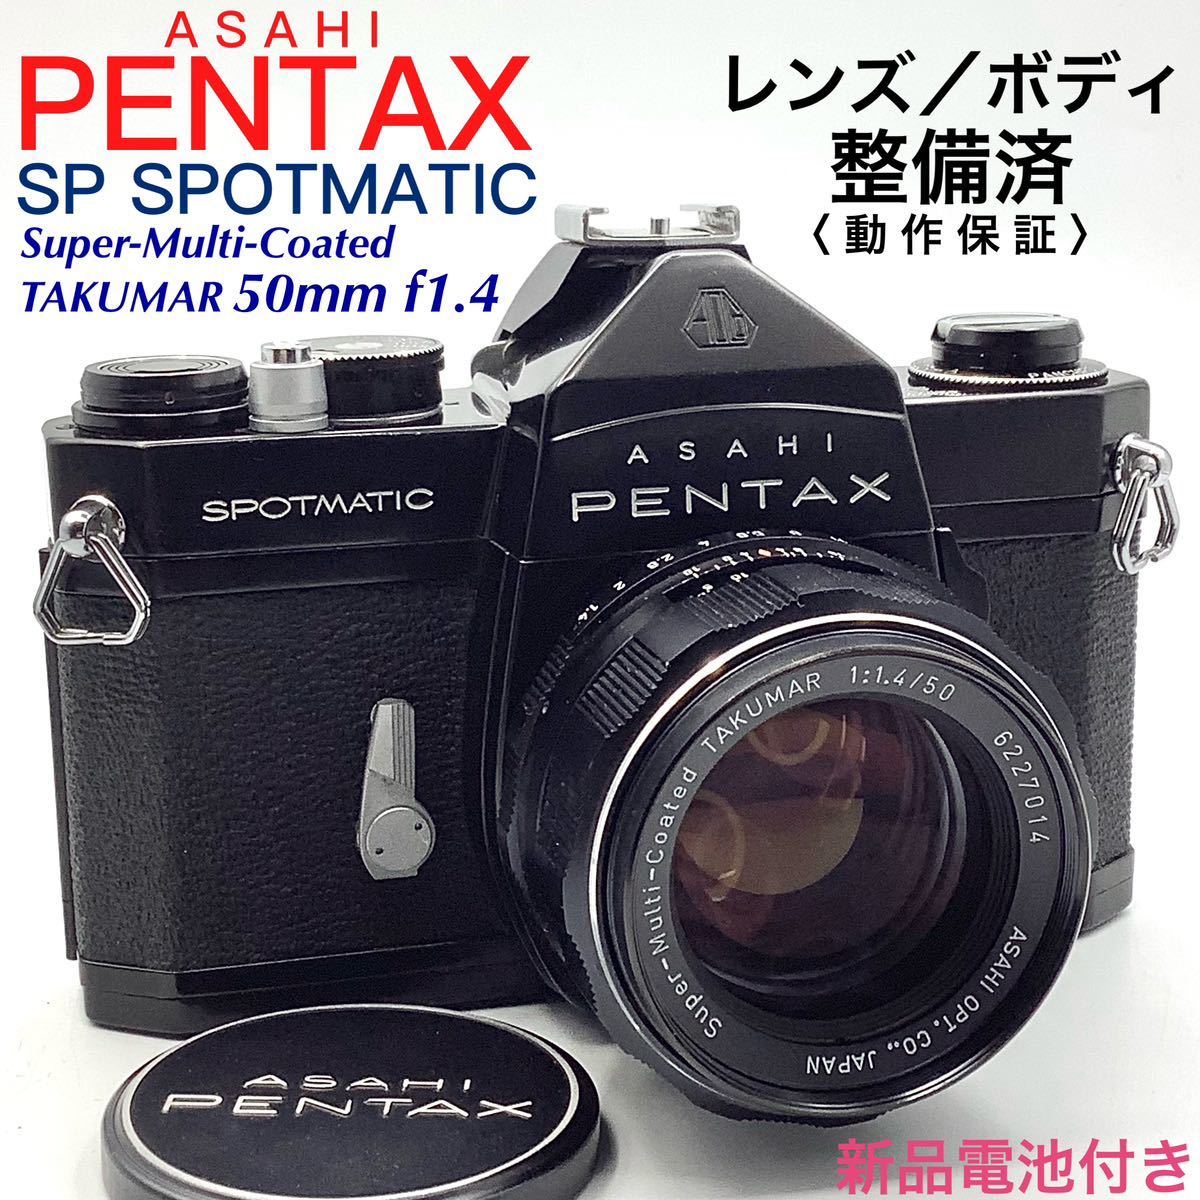 【 整備済・動作保証 】PENTAX アサヒペンタックス SP SPOTMATIC ブラックペイント ／ Super-Multi-Coated TAKUMAR 50mm f1.4